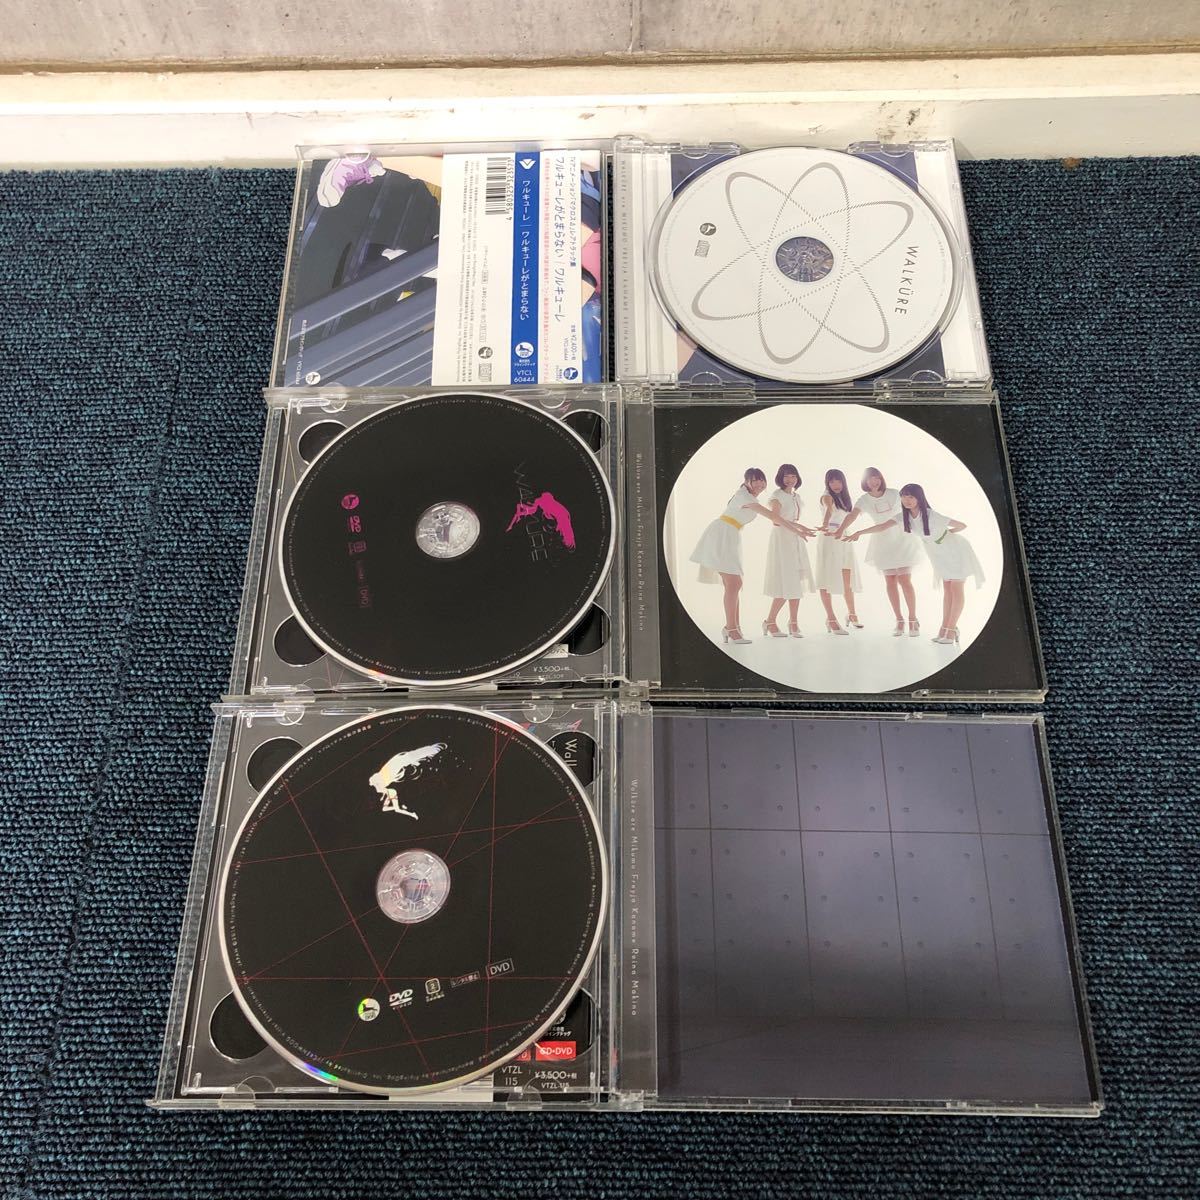 【に.ec】CD ワルキューレ WALKURE 3セット マクロスTrap! DVD付き アルバム マクロスΔ(デルタ とまらない attack_画像3